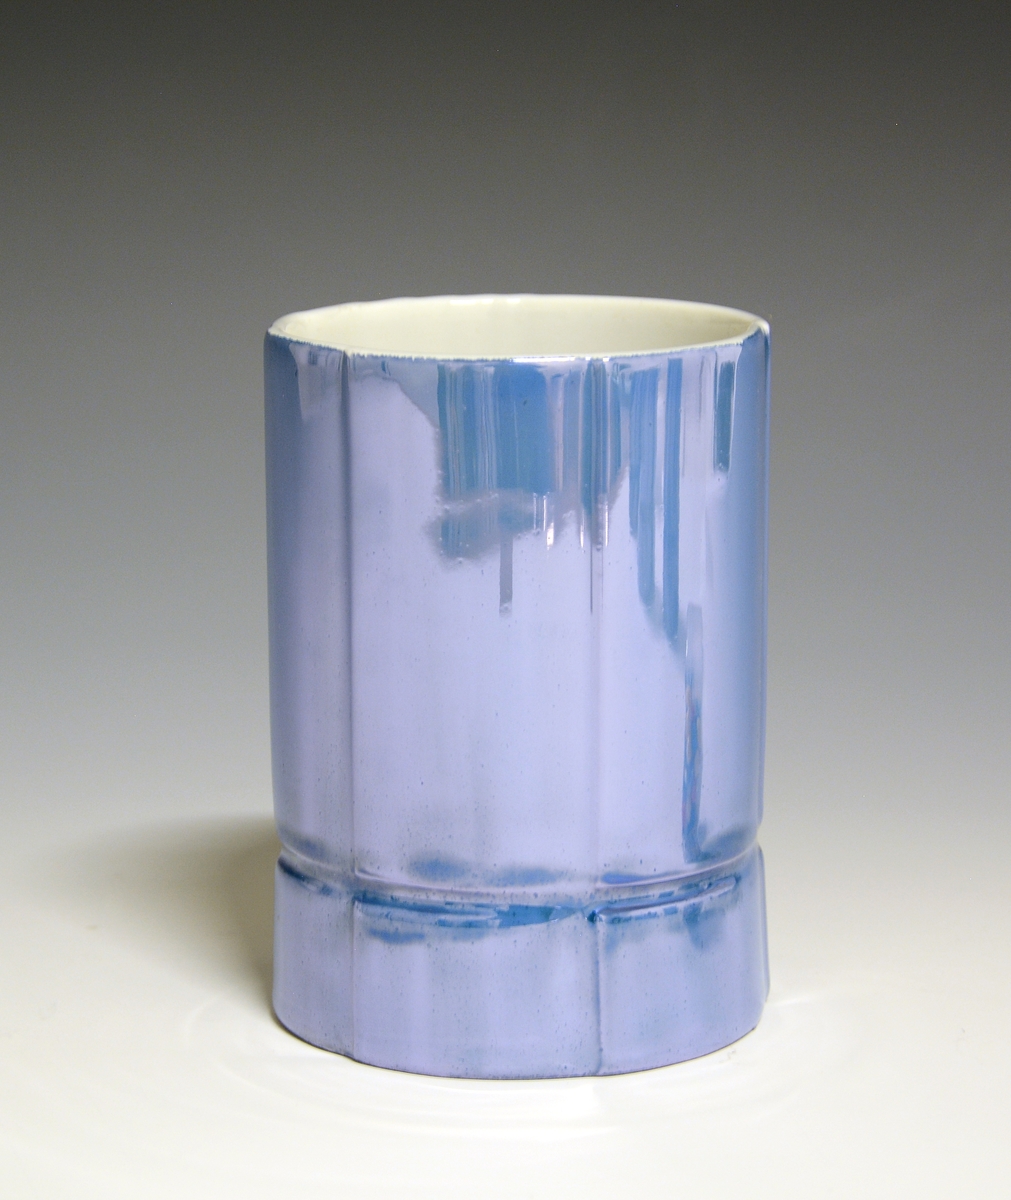 Vase og telysholder av porselen. Fungerer som lysestake den ene veien og vase den andre veien. Sylinderformet med en inntrapping i overgangen mellom vase og telysholder. Hvit glasur. Dekorert med blåfarget heldekkende dekor. Ustemplet
Design: Grete Rønning.